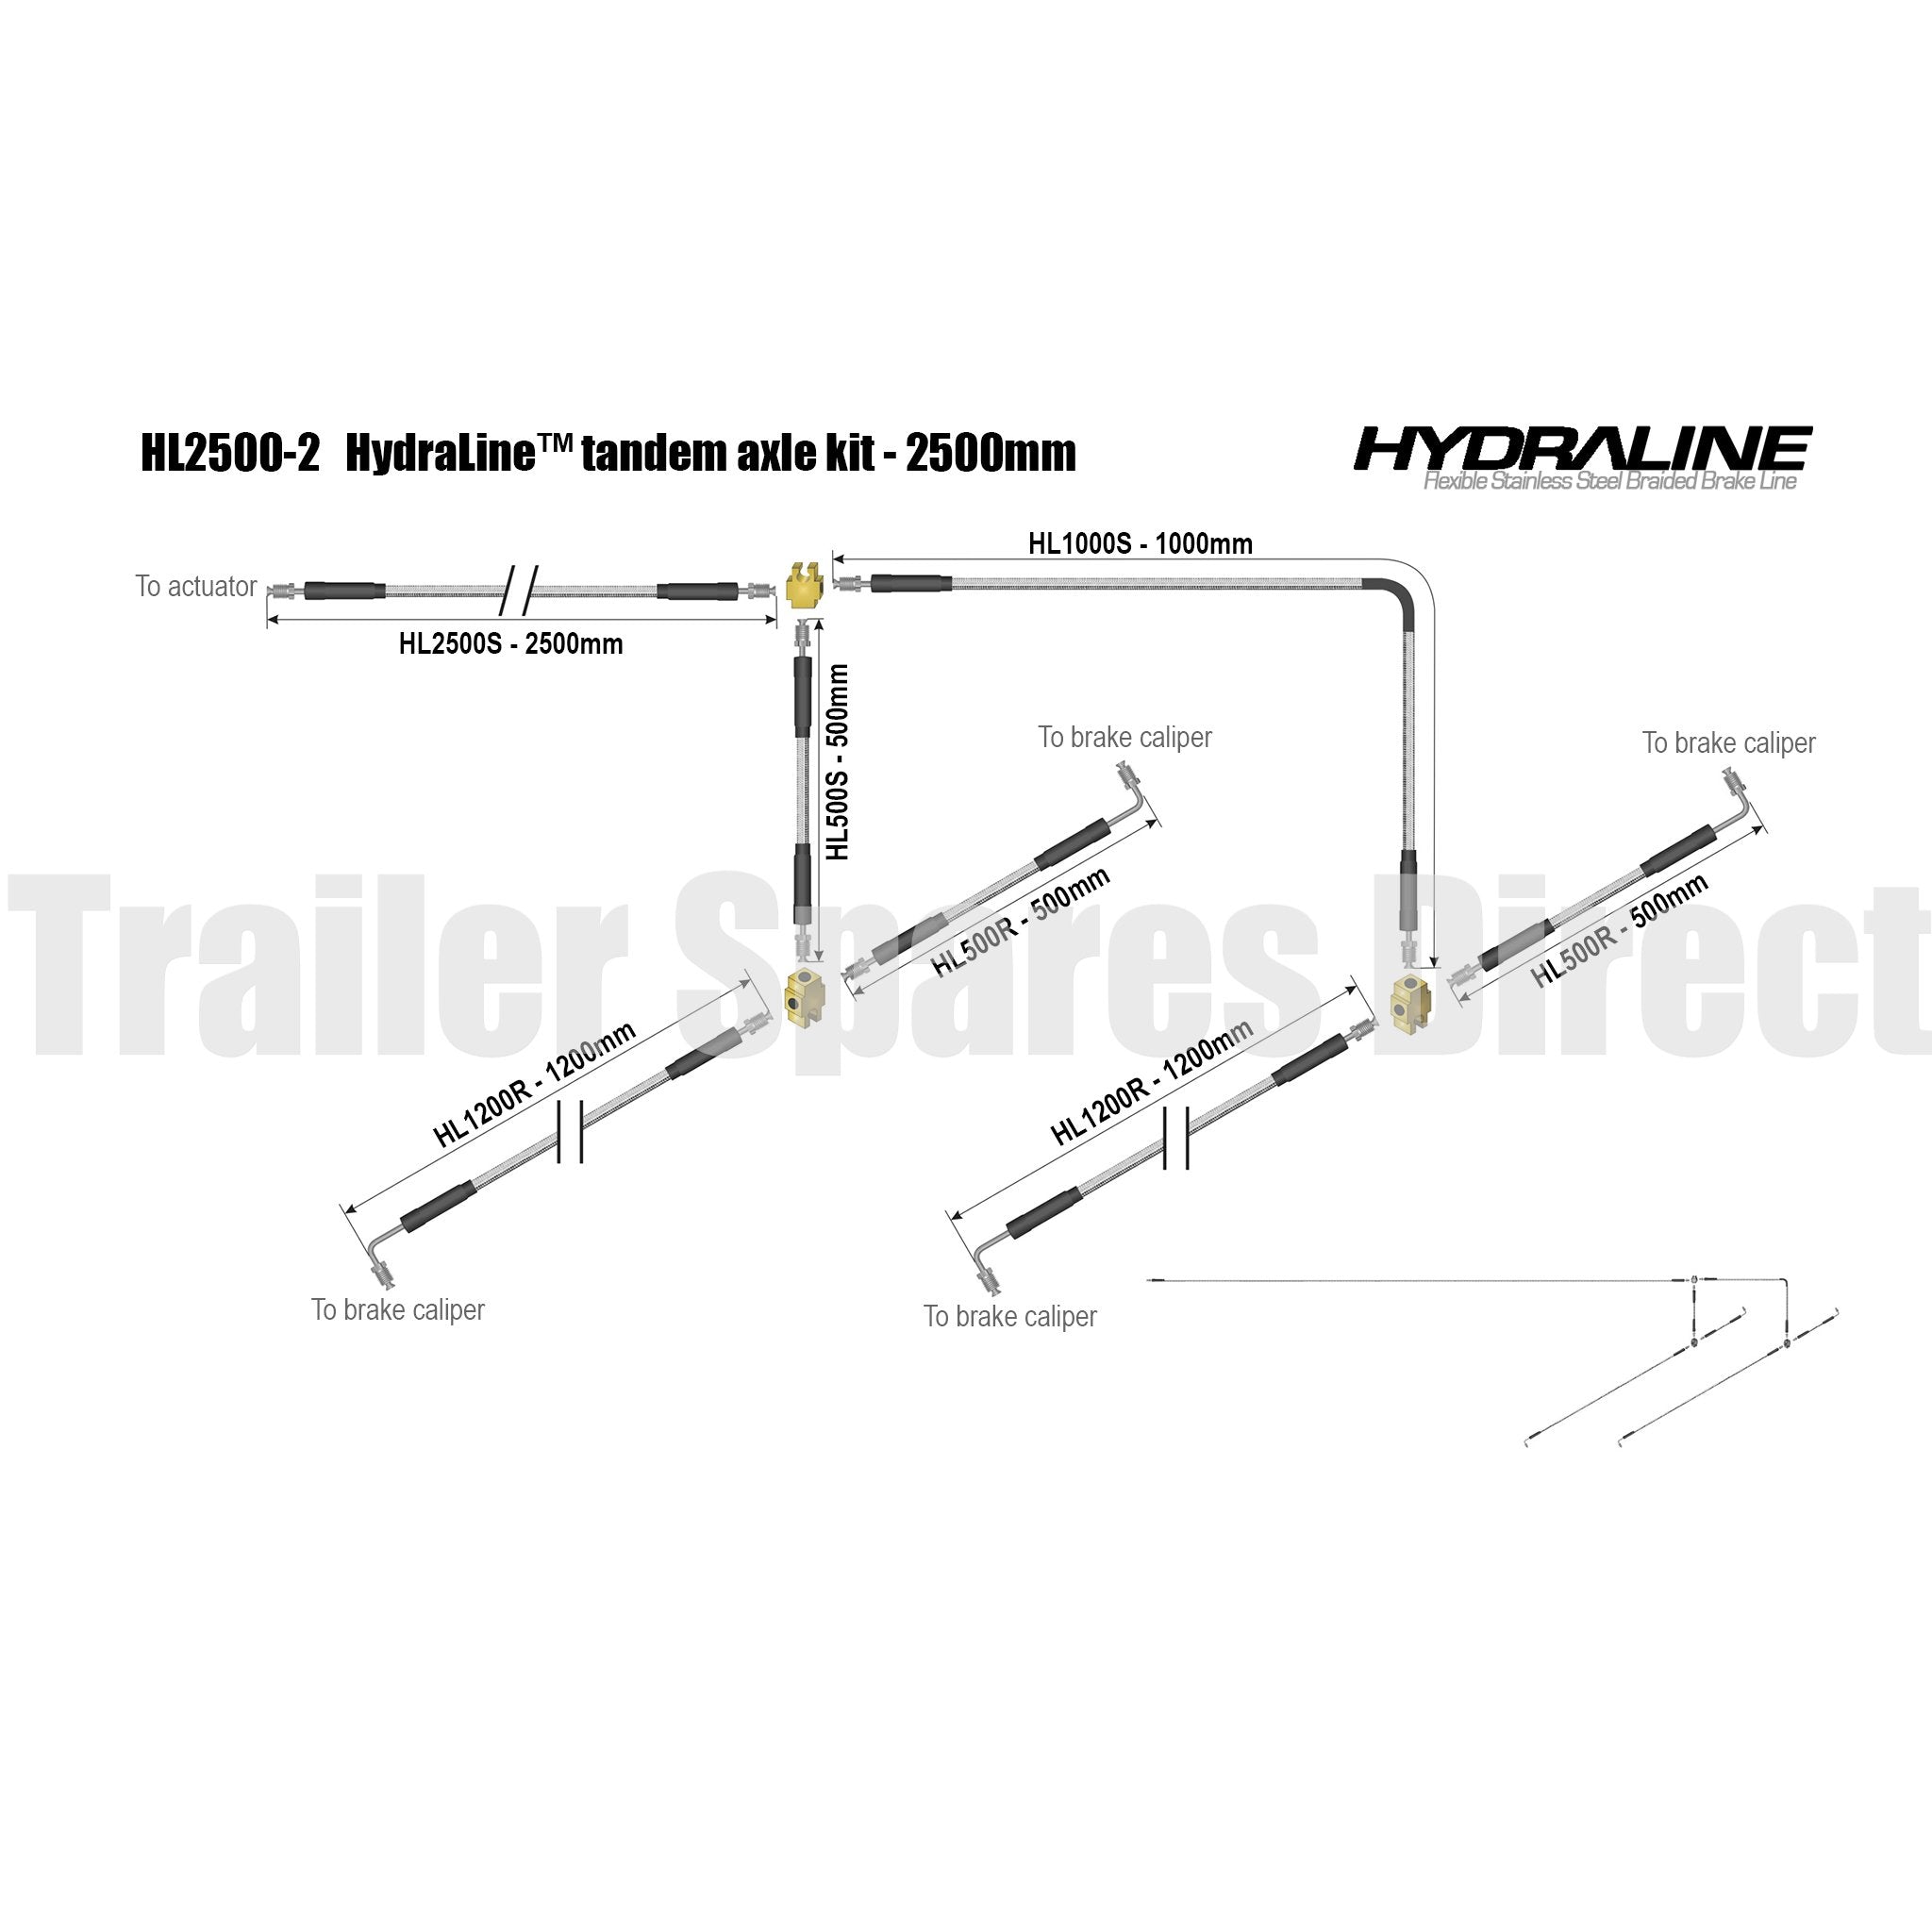 Hydraline kit 2500mm tandem axle diagram